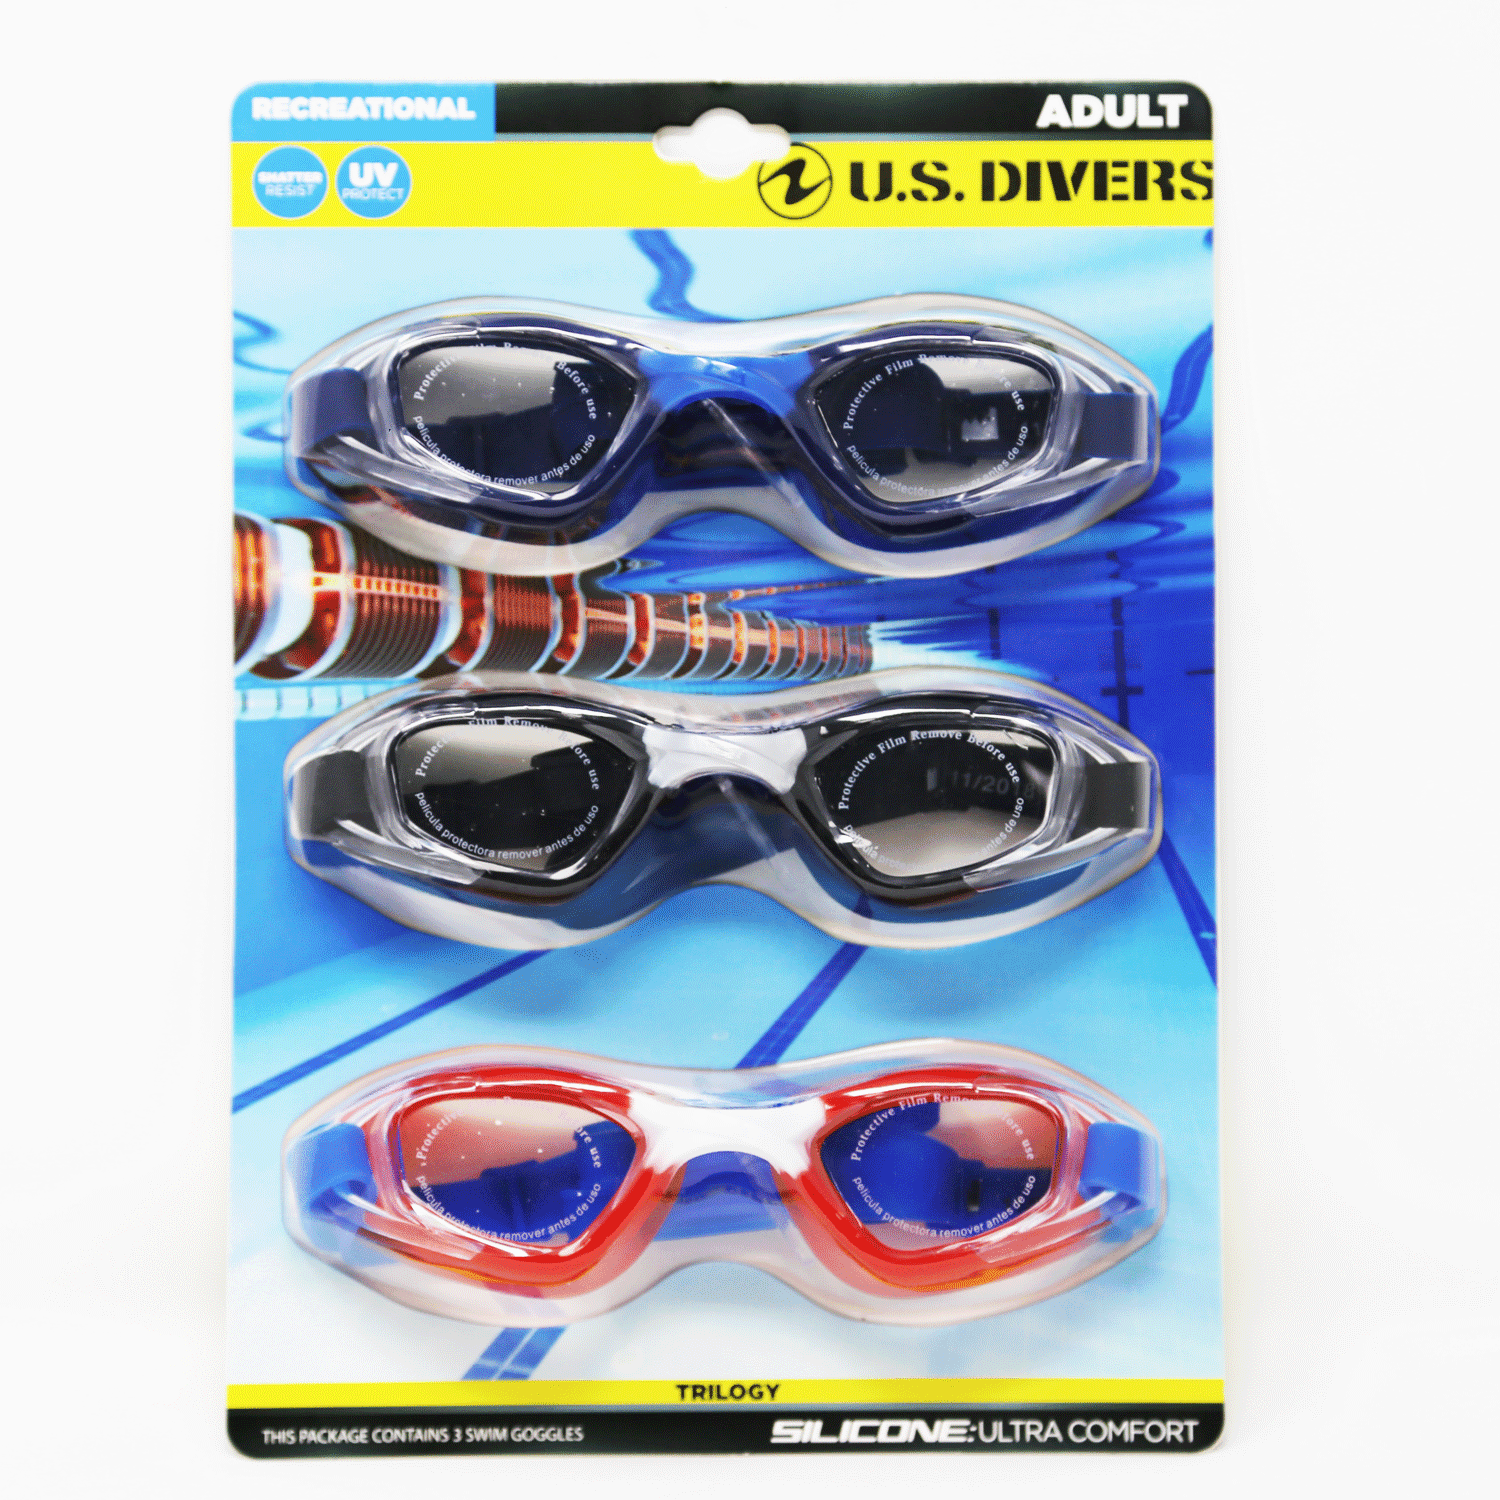 U.S. Divers Trilogy Swim Goggles, 3 Count - Walmart.com - Walmart.com